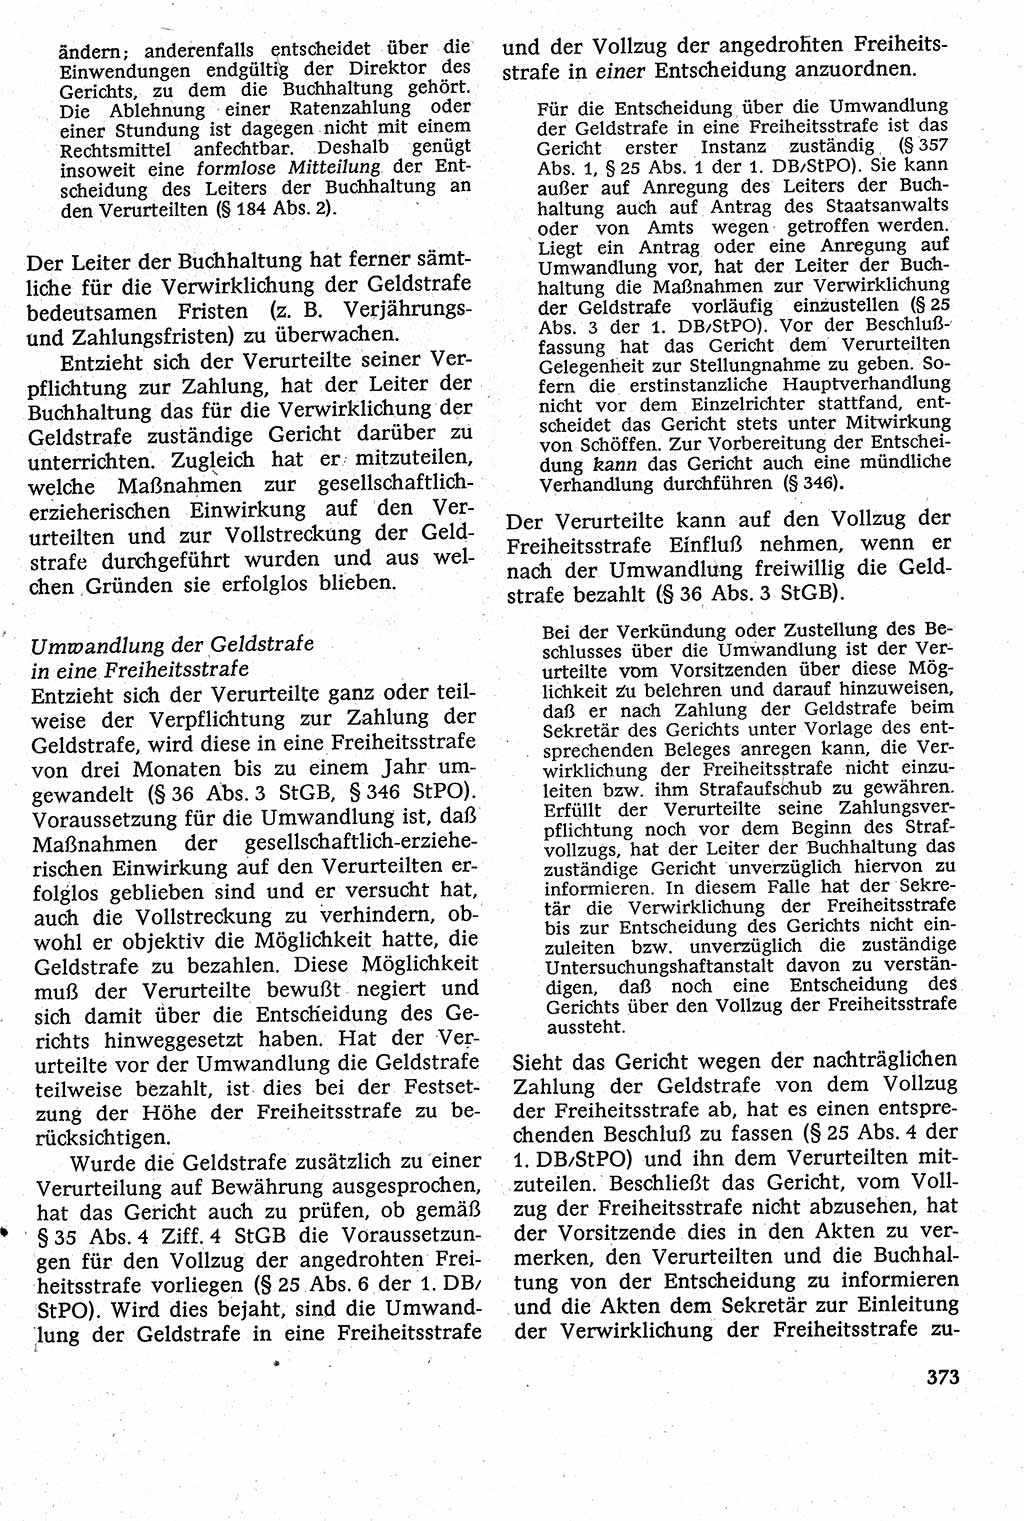 Strafverfahrensrecht [Deutsche Demokratische Republik (DDR)], Lehrbuch 1982, Seite 373 (Strafverf.-R. DDR Lb. 1982, S. 373)